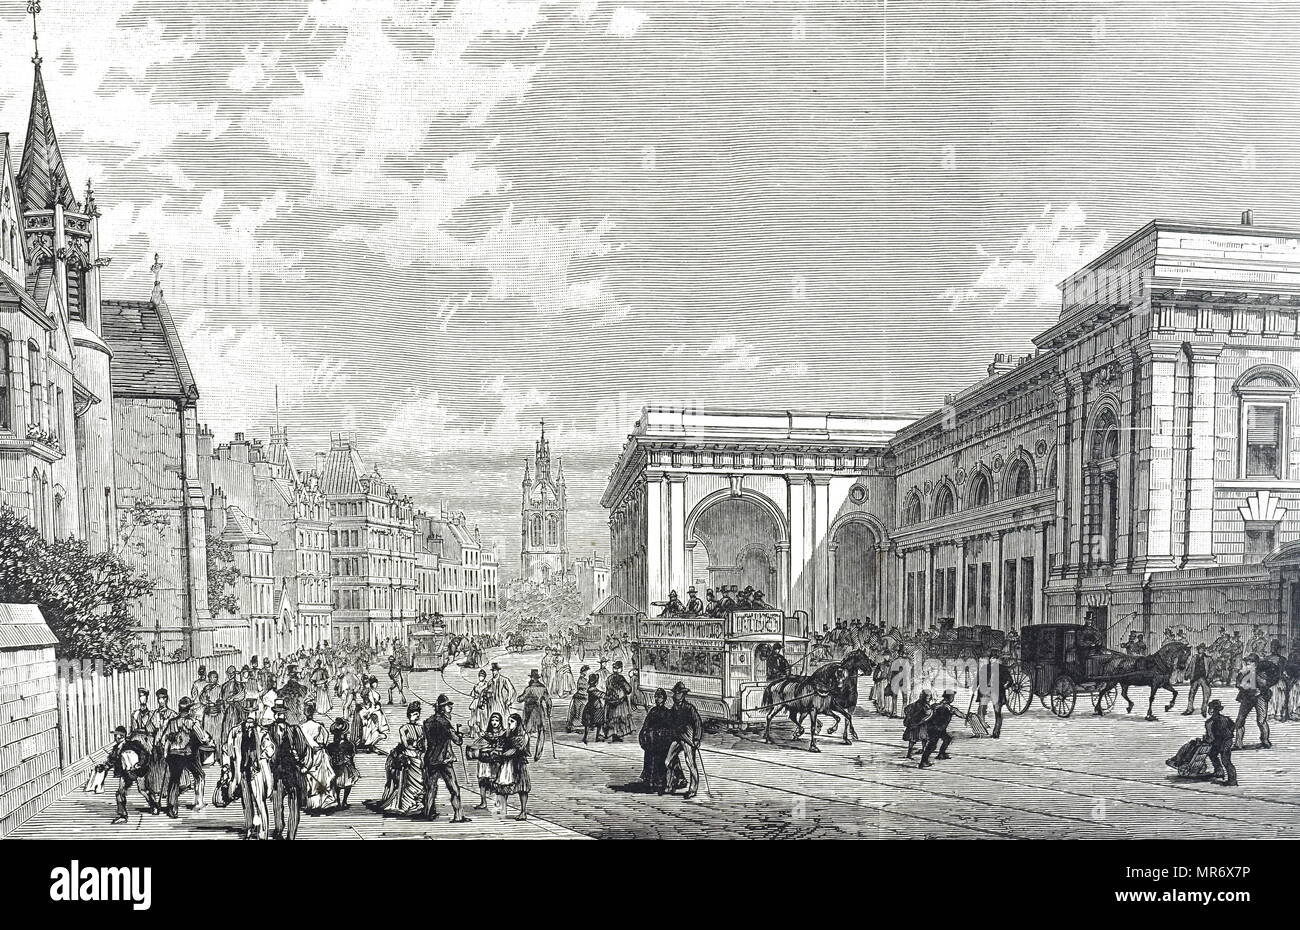 Gravure représentant une scène de rue à Newcastle upon Tyne au cours du xixe siècle. Les tramways à chevaux sont visibles à l'extérieur de la gare centrale. En date du 19e siècle Banque D'Images